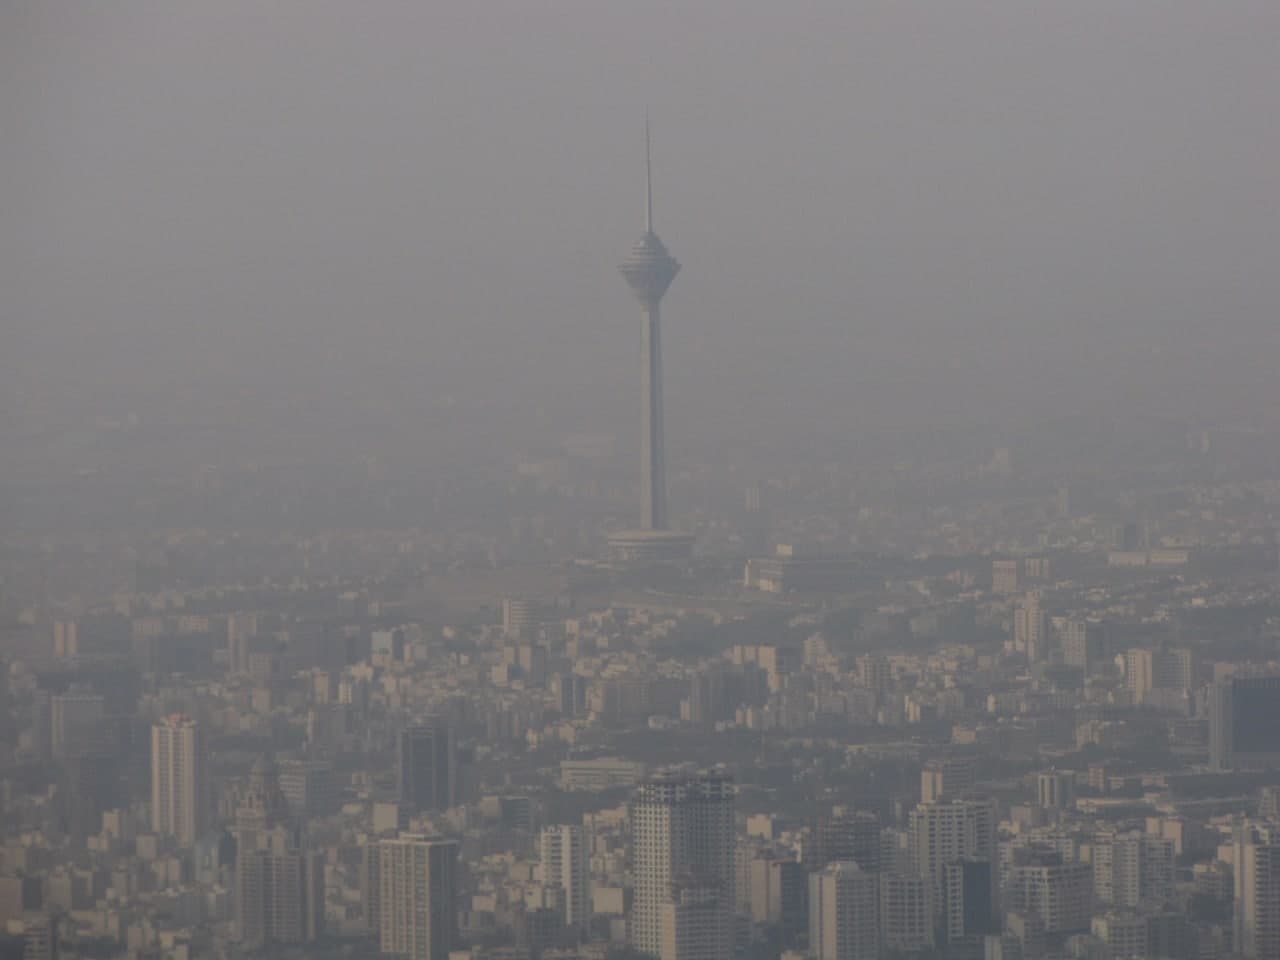 هشدار اورژانس به پایتخت نشینان درباره آلودگی هوا